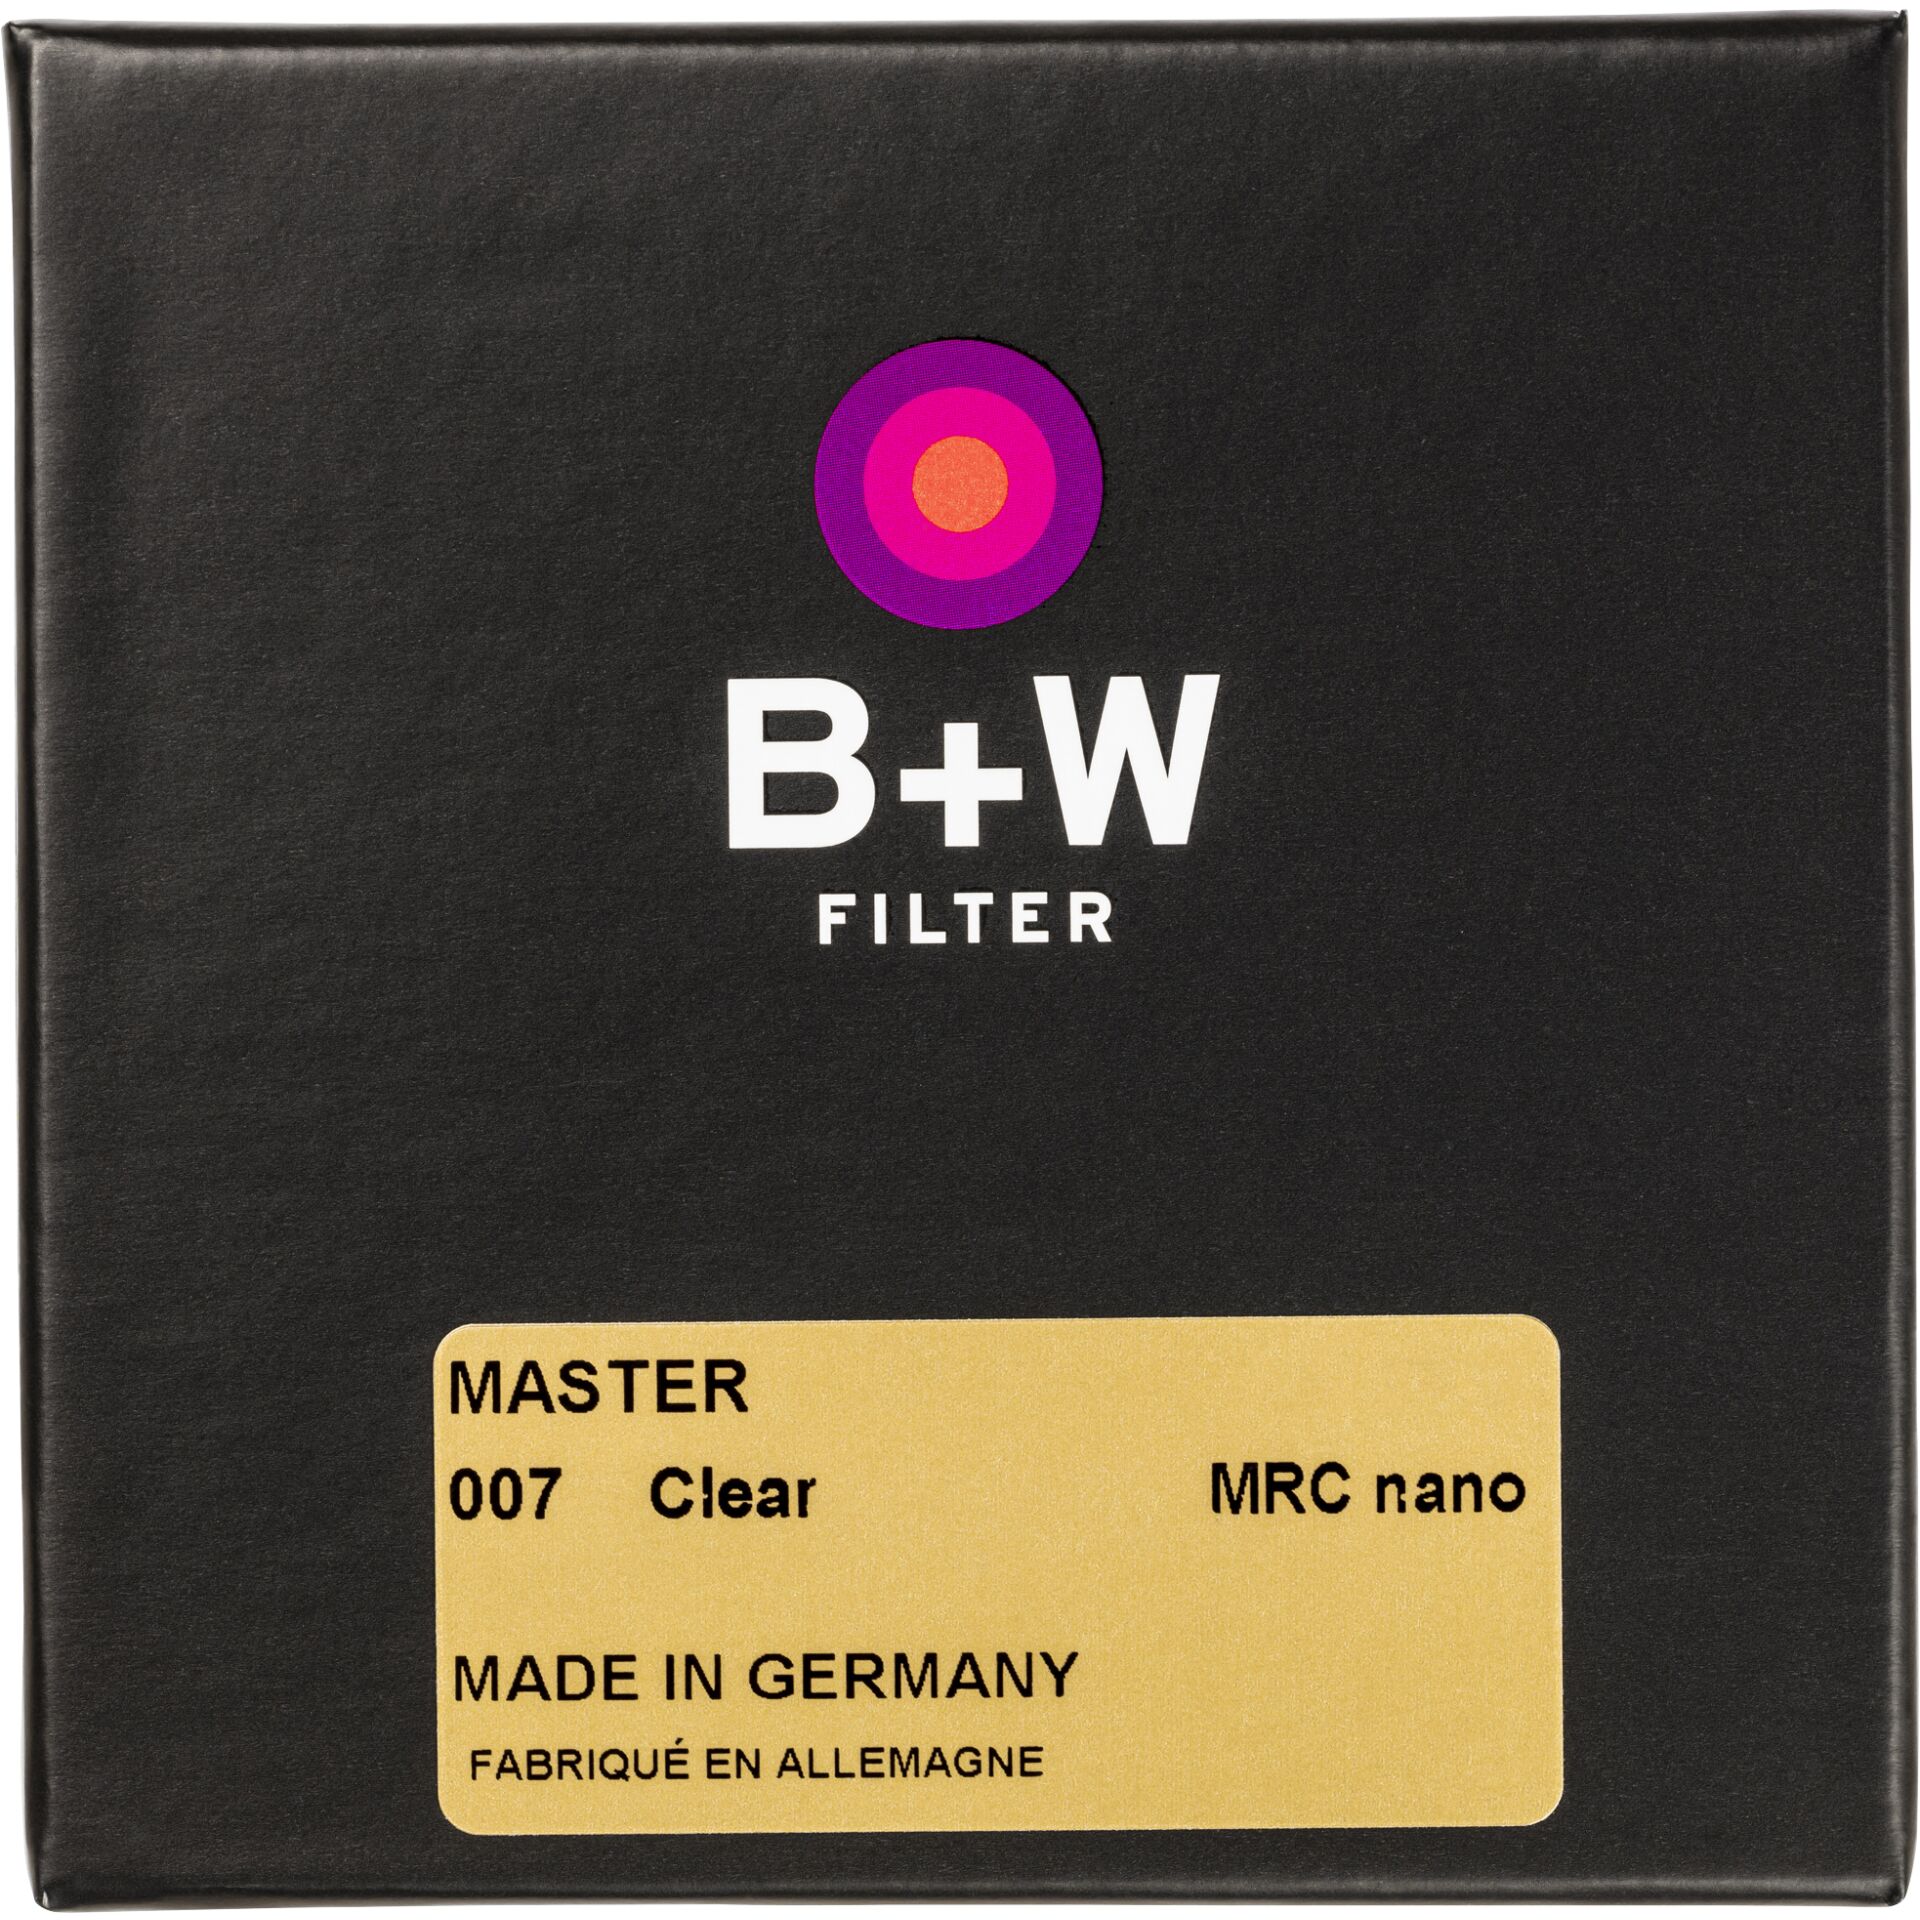 B+W CLEAR FILTER MRC nano MASTER 39mm